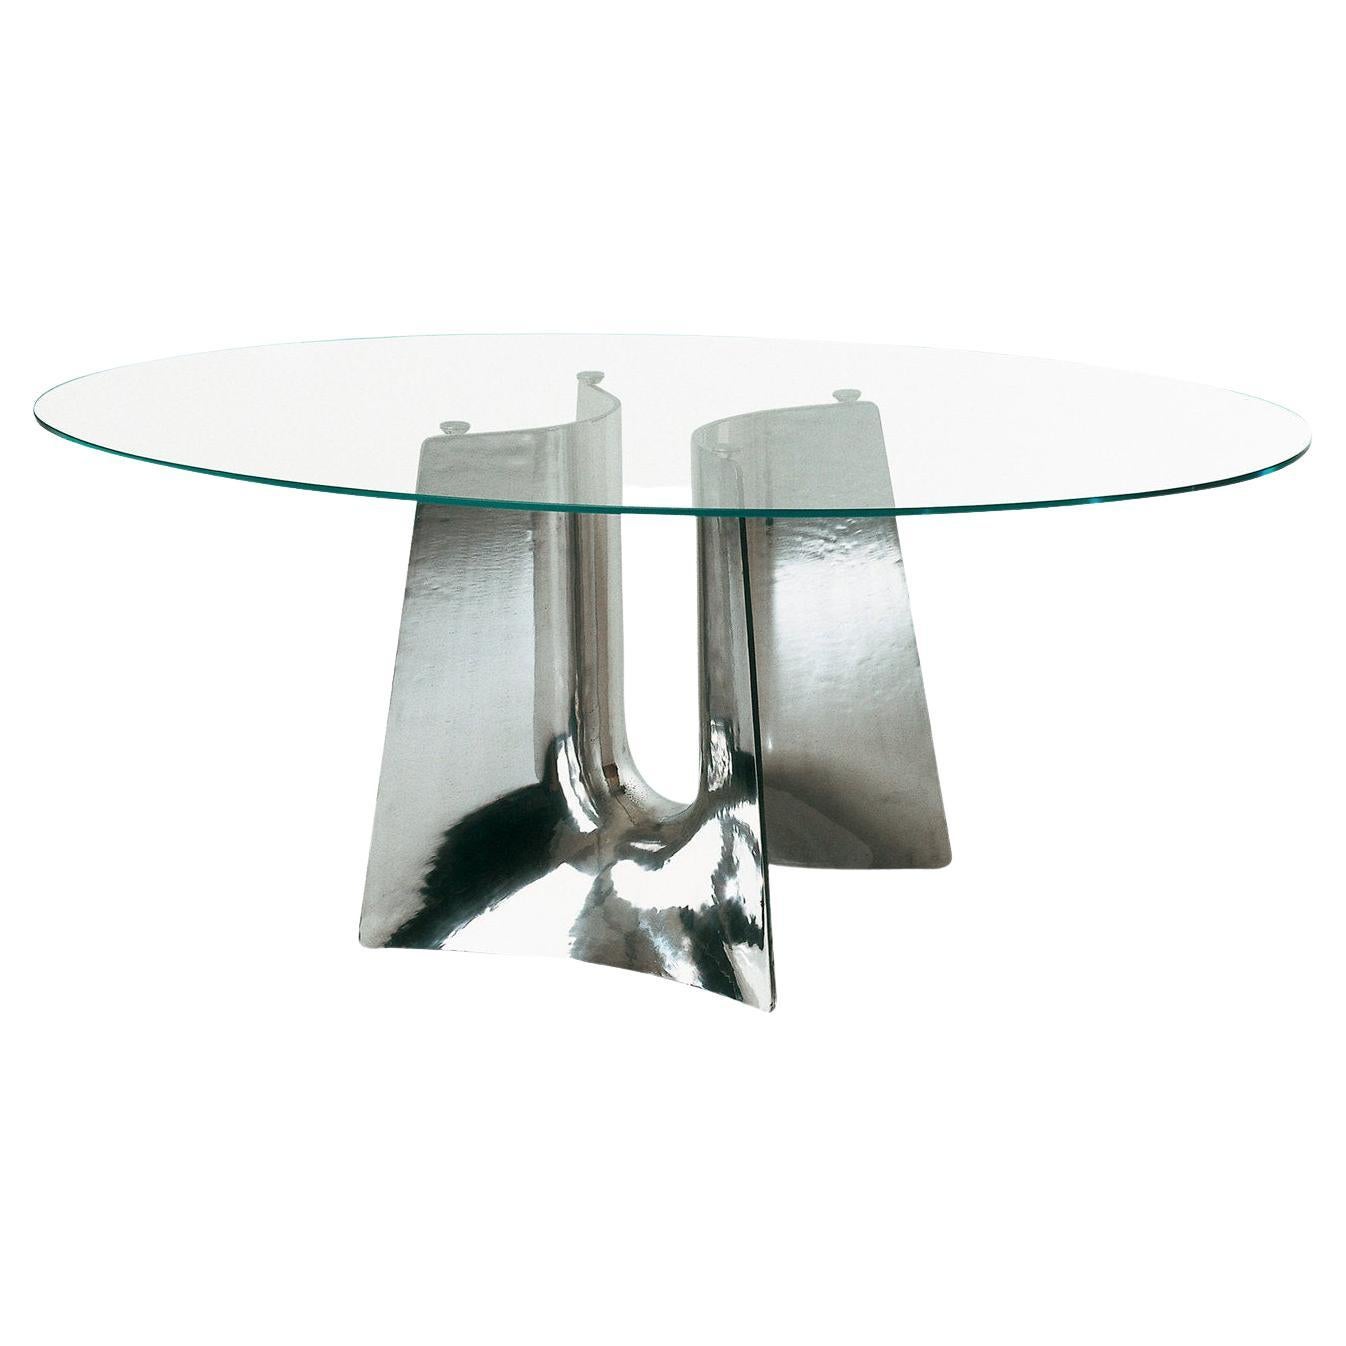 Ovaler Esstisch aus gebogenem Glas von Jeff Miller